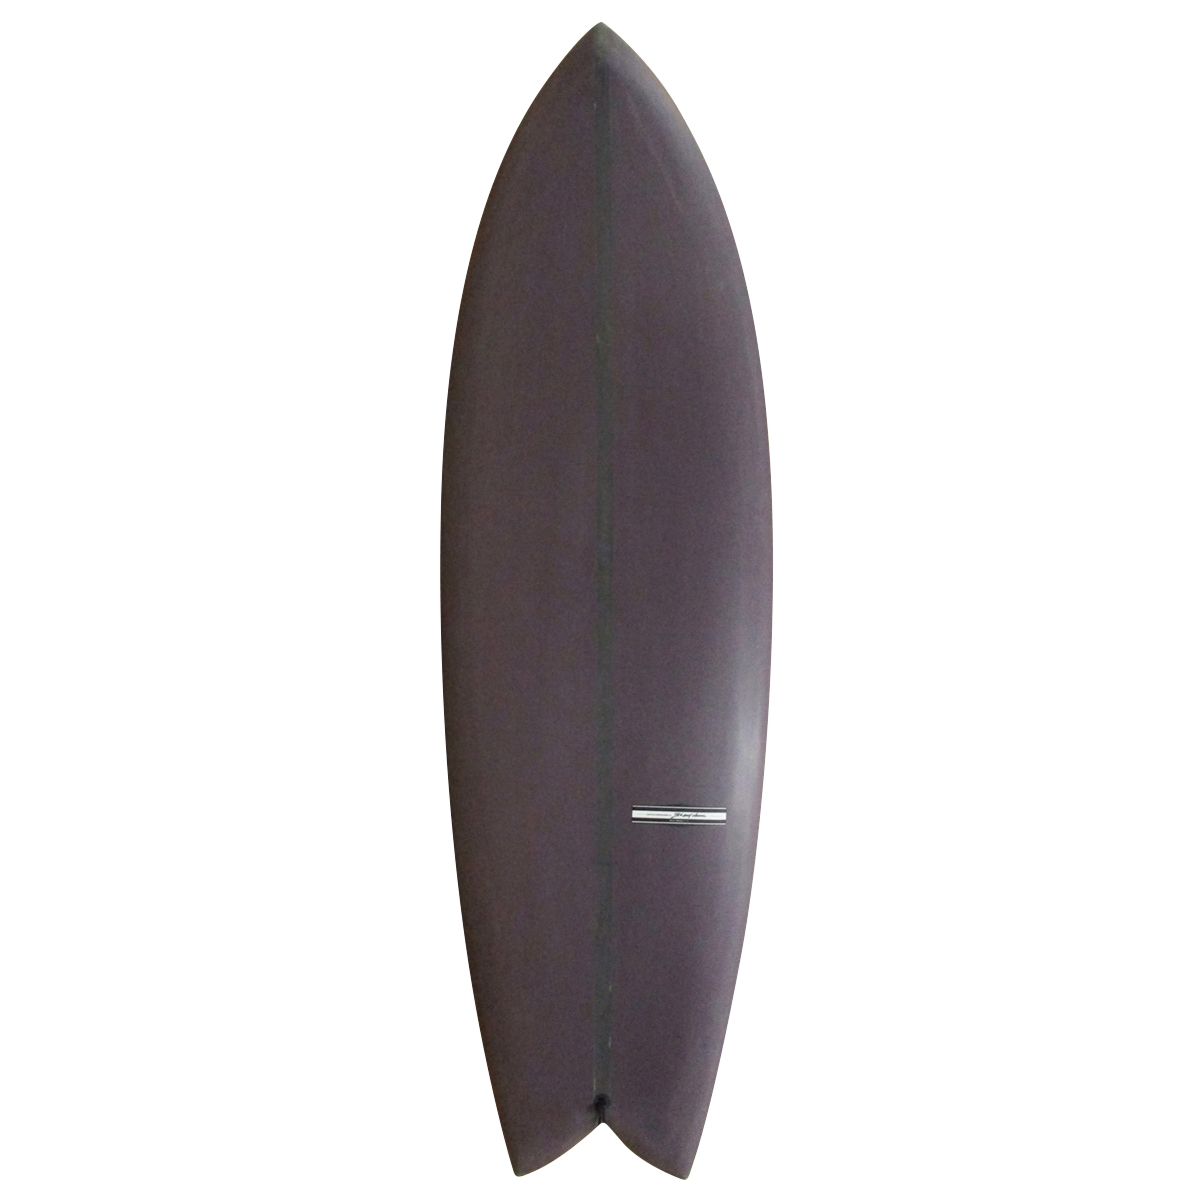 セモンクロワ送料無料 一部除く CMC SURFBOARDS フィン付 SURF SOFT 7 